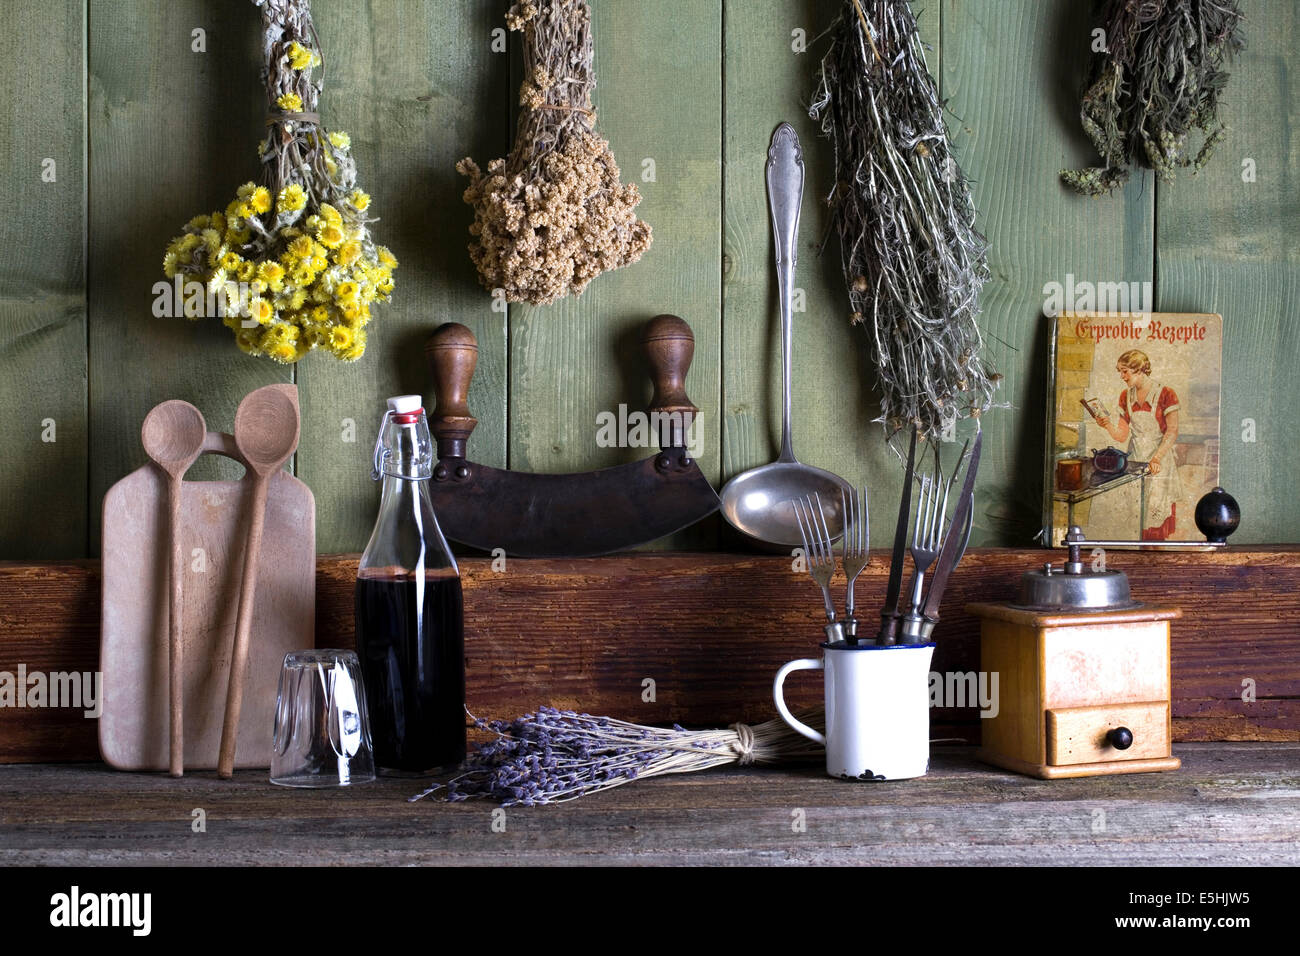 Cucina rustica ancora in vita con utensili da cucina e di erbe secche Foto Stock